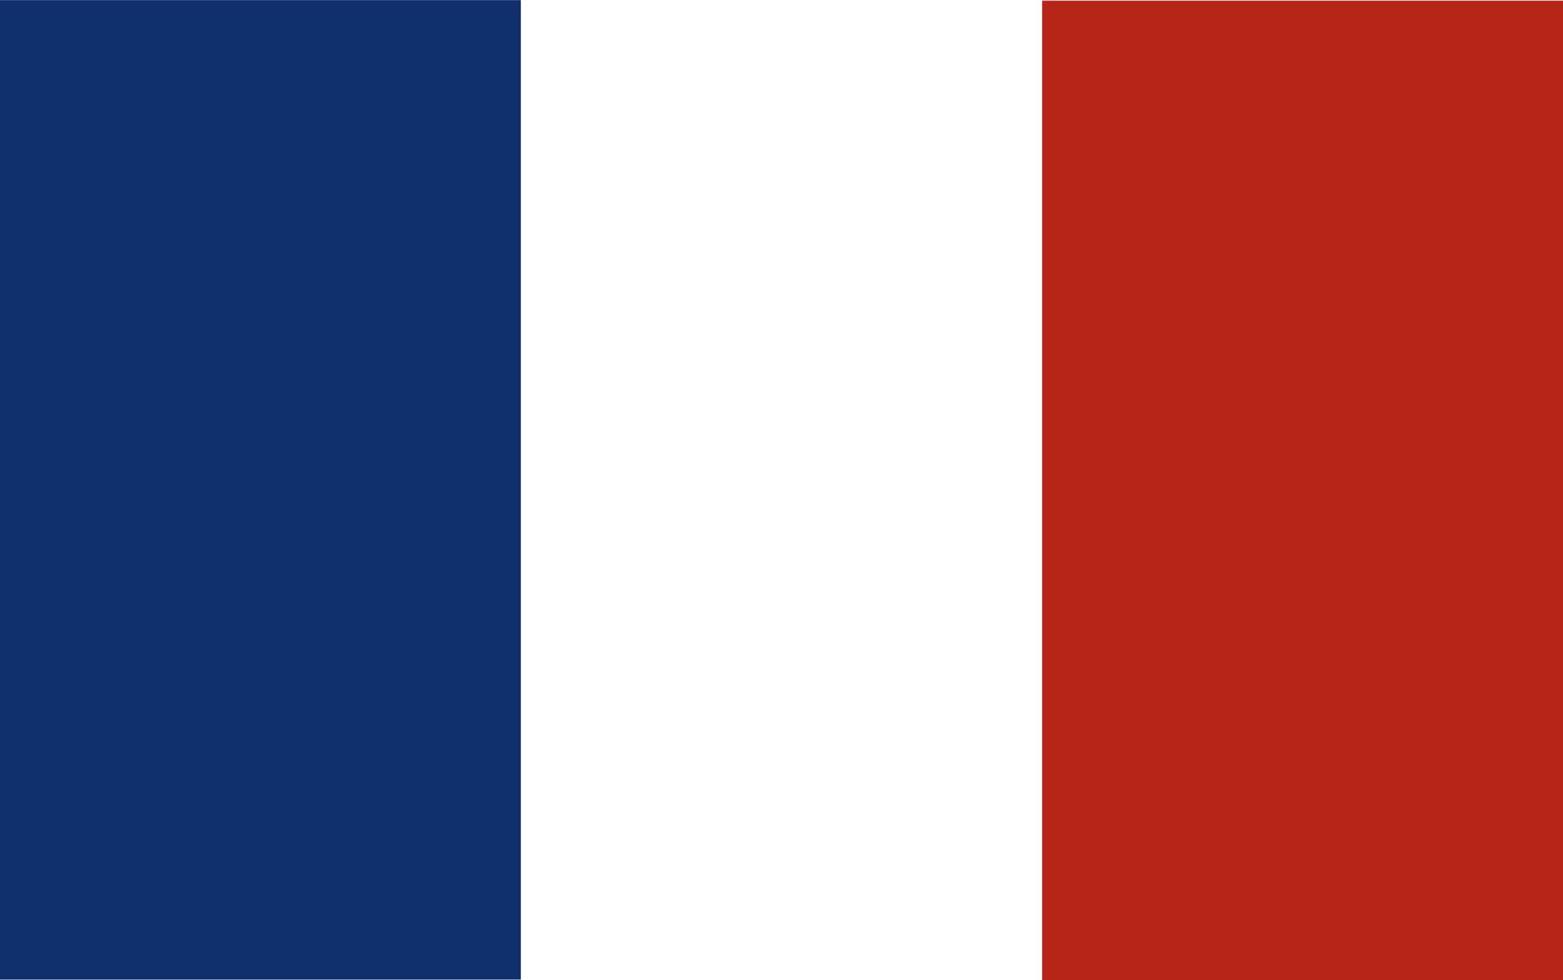 webflag of france.official proporción dimensión y colores. ilustración vectorial vector